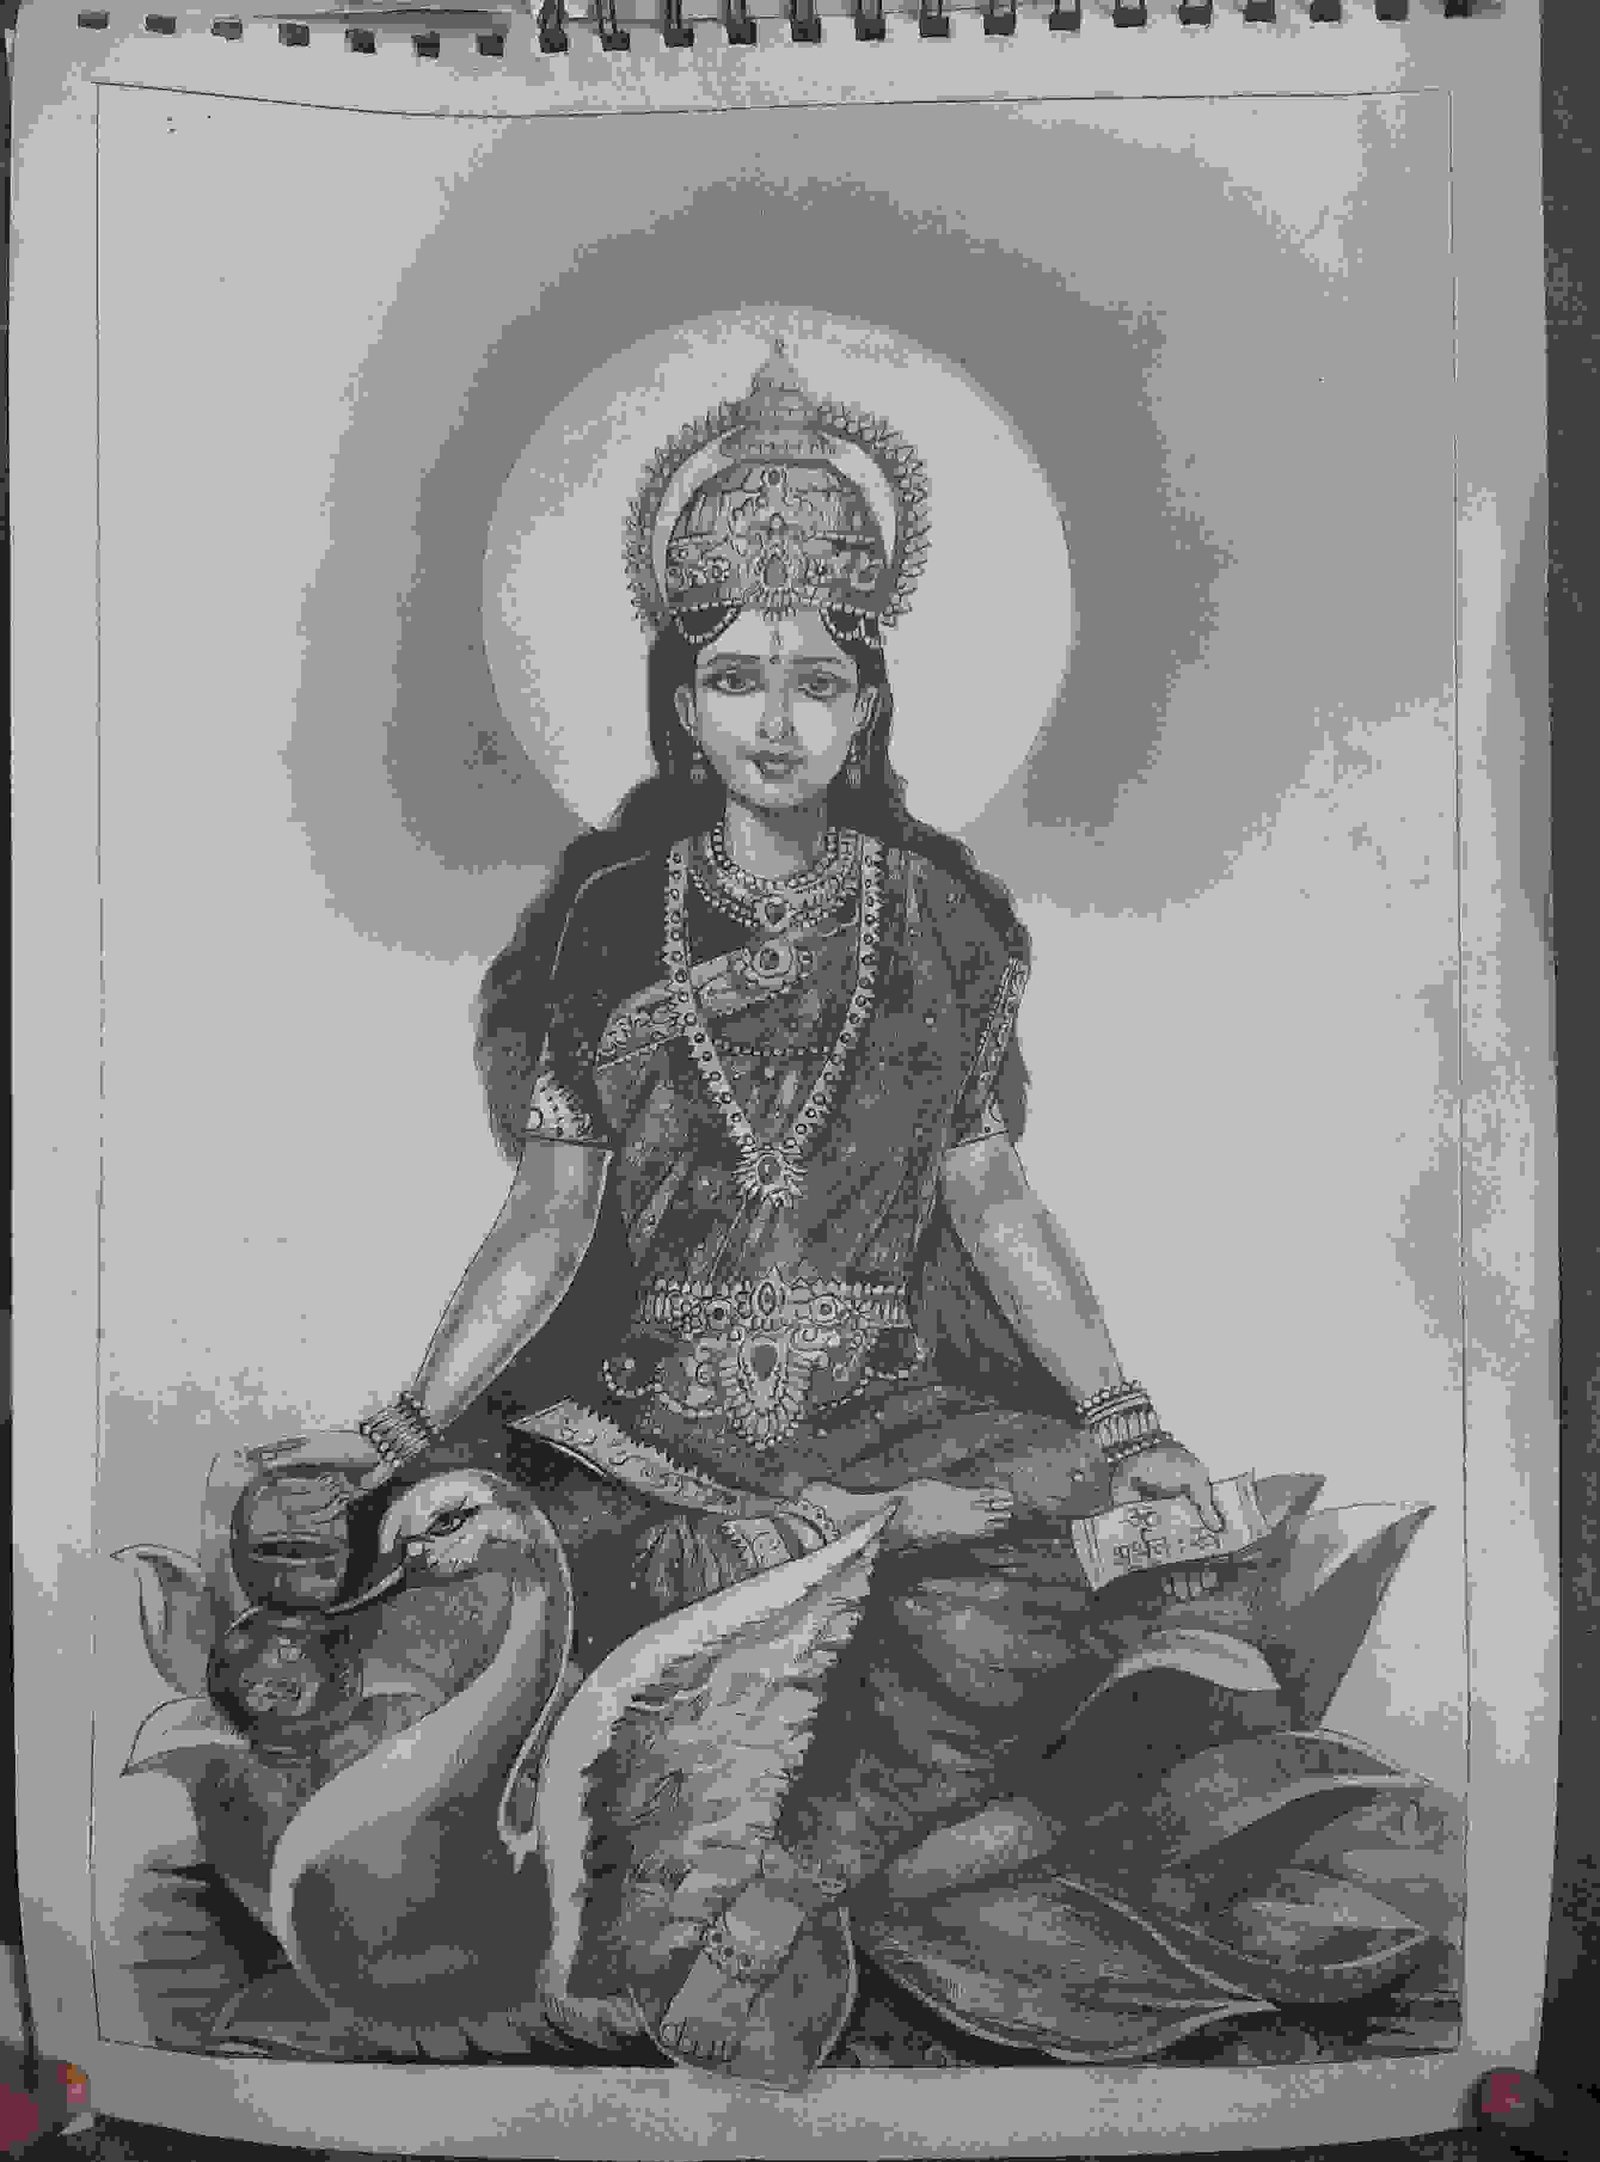 Painting Of Gayatri Mata Pencil Sketching In Pencil Shading Size 40cm 